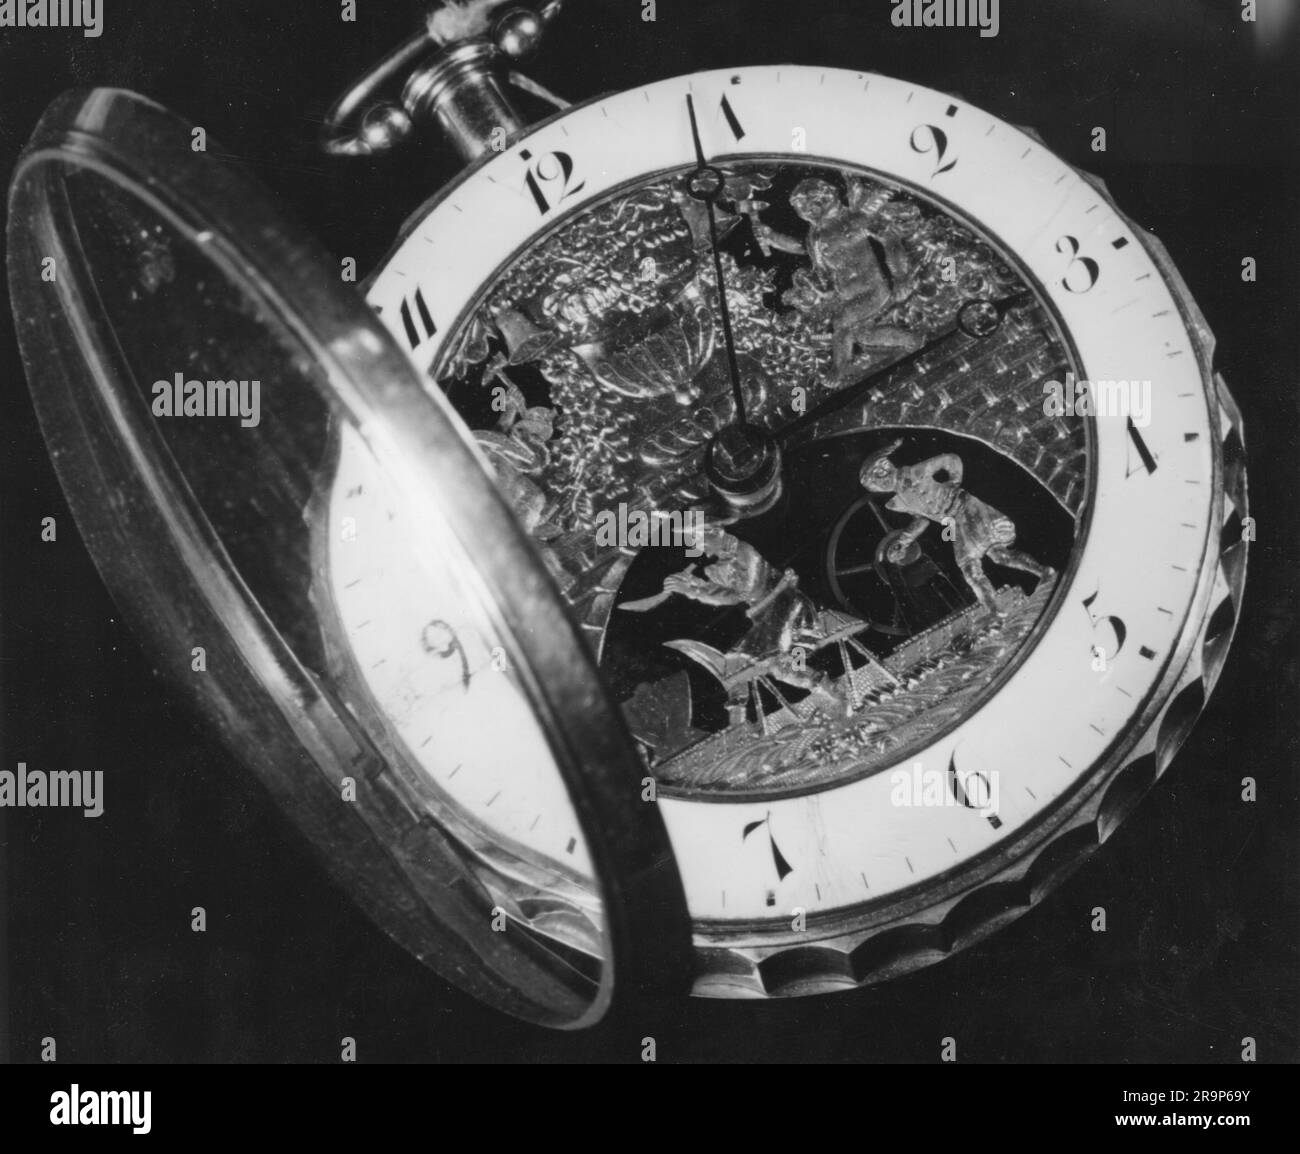 Uhr, Taschenuhr, Taschenuhr mit Schlagmechanismus, ZUSÄTZLICHE-RECHTE-FREIGABE-INFO-NICHT-VERFÜGBAR Stockfoto